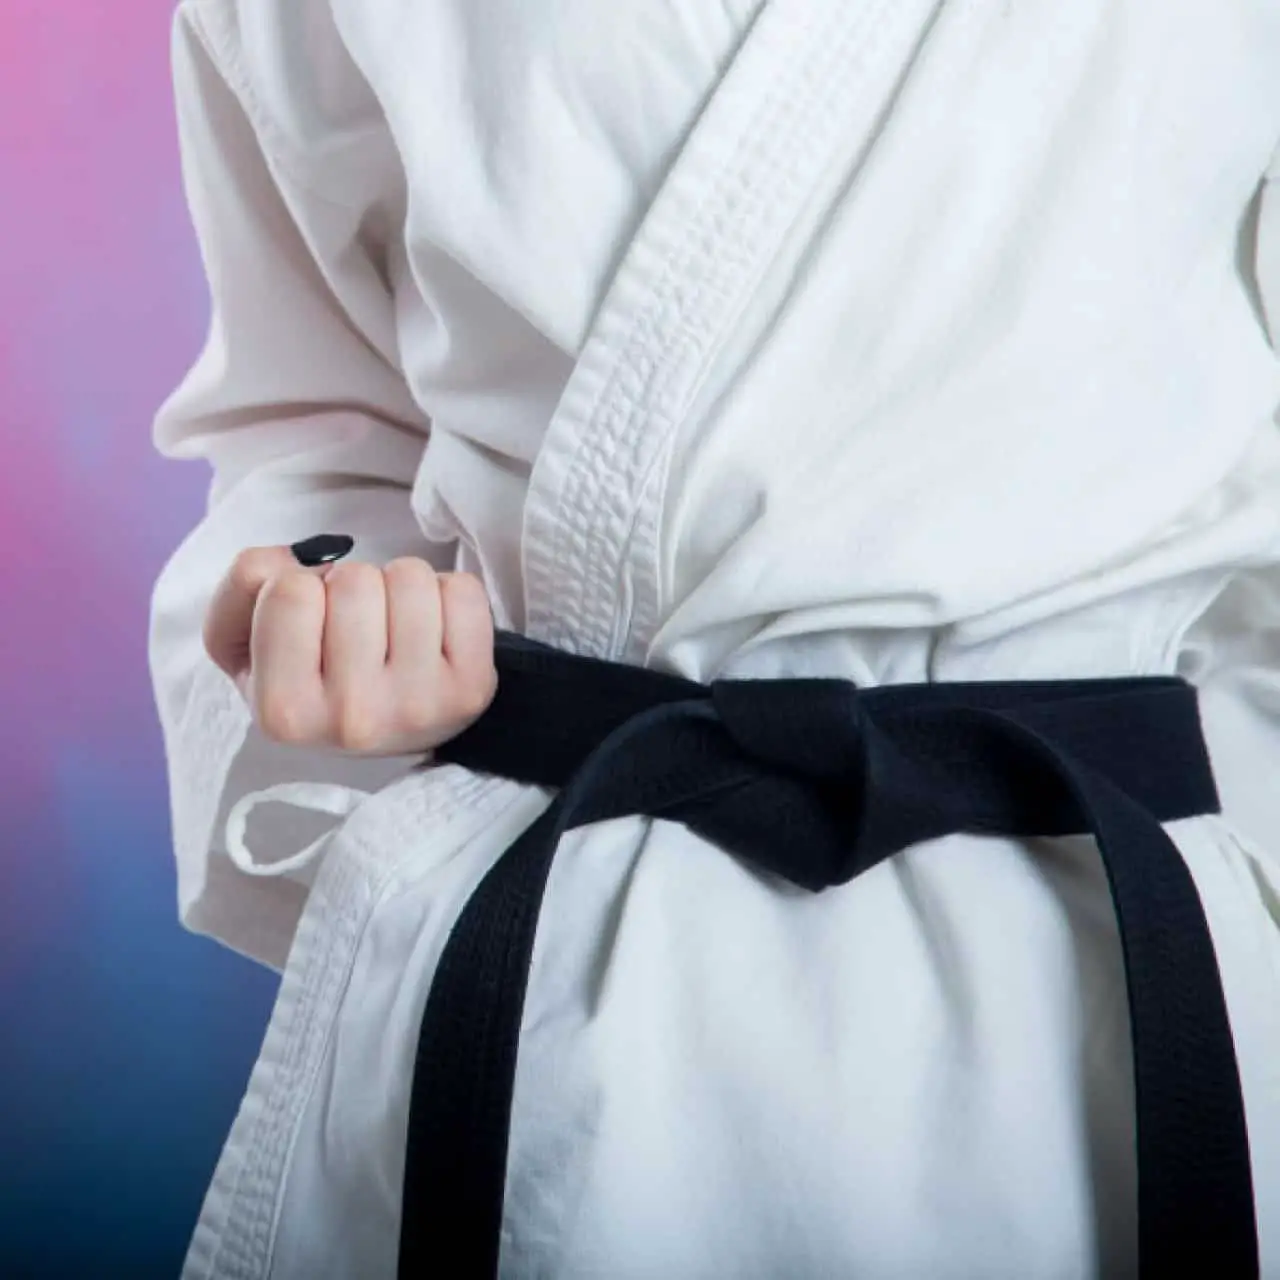 How To Get a Black Belt in Taekwondo - Craft of Manhood